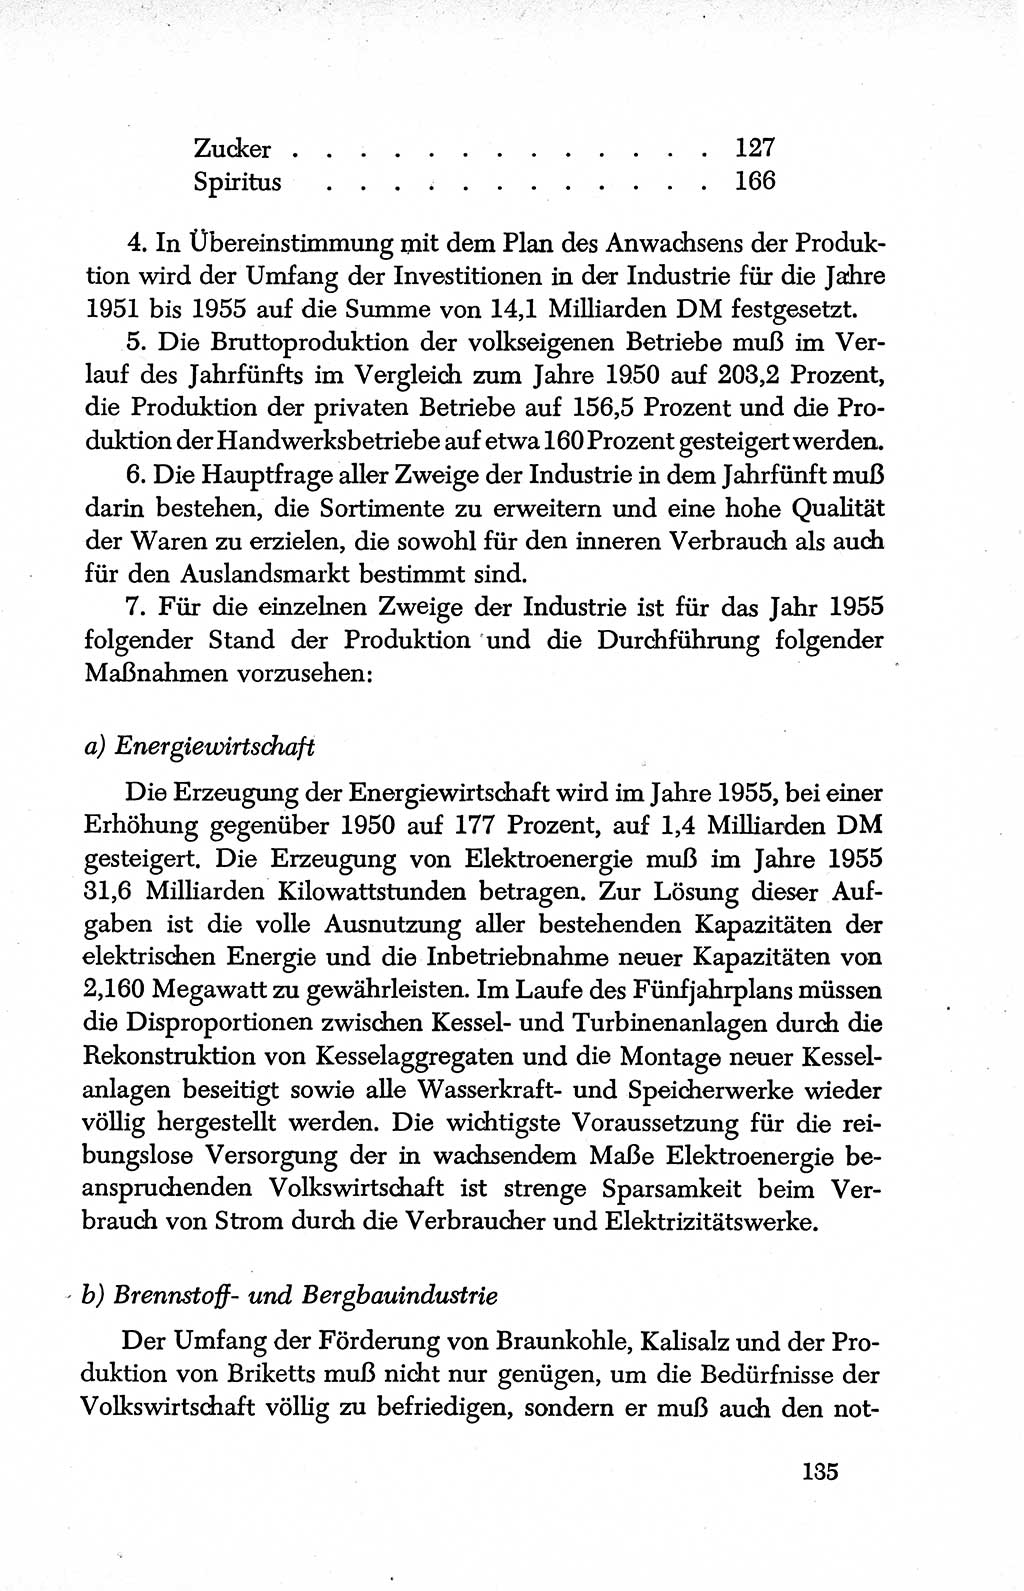 Dokumente der Sozialistischen Einheitspartei Deutschlands (SED) [Deutsche Demokratische Republik (DDR)] 1950-1952, Seite 135 (Dok. SED DDR 1950-1952, S. 135)